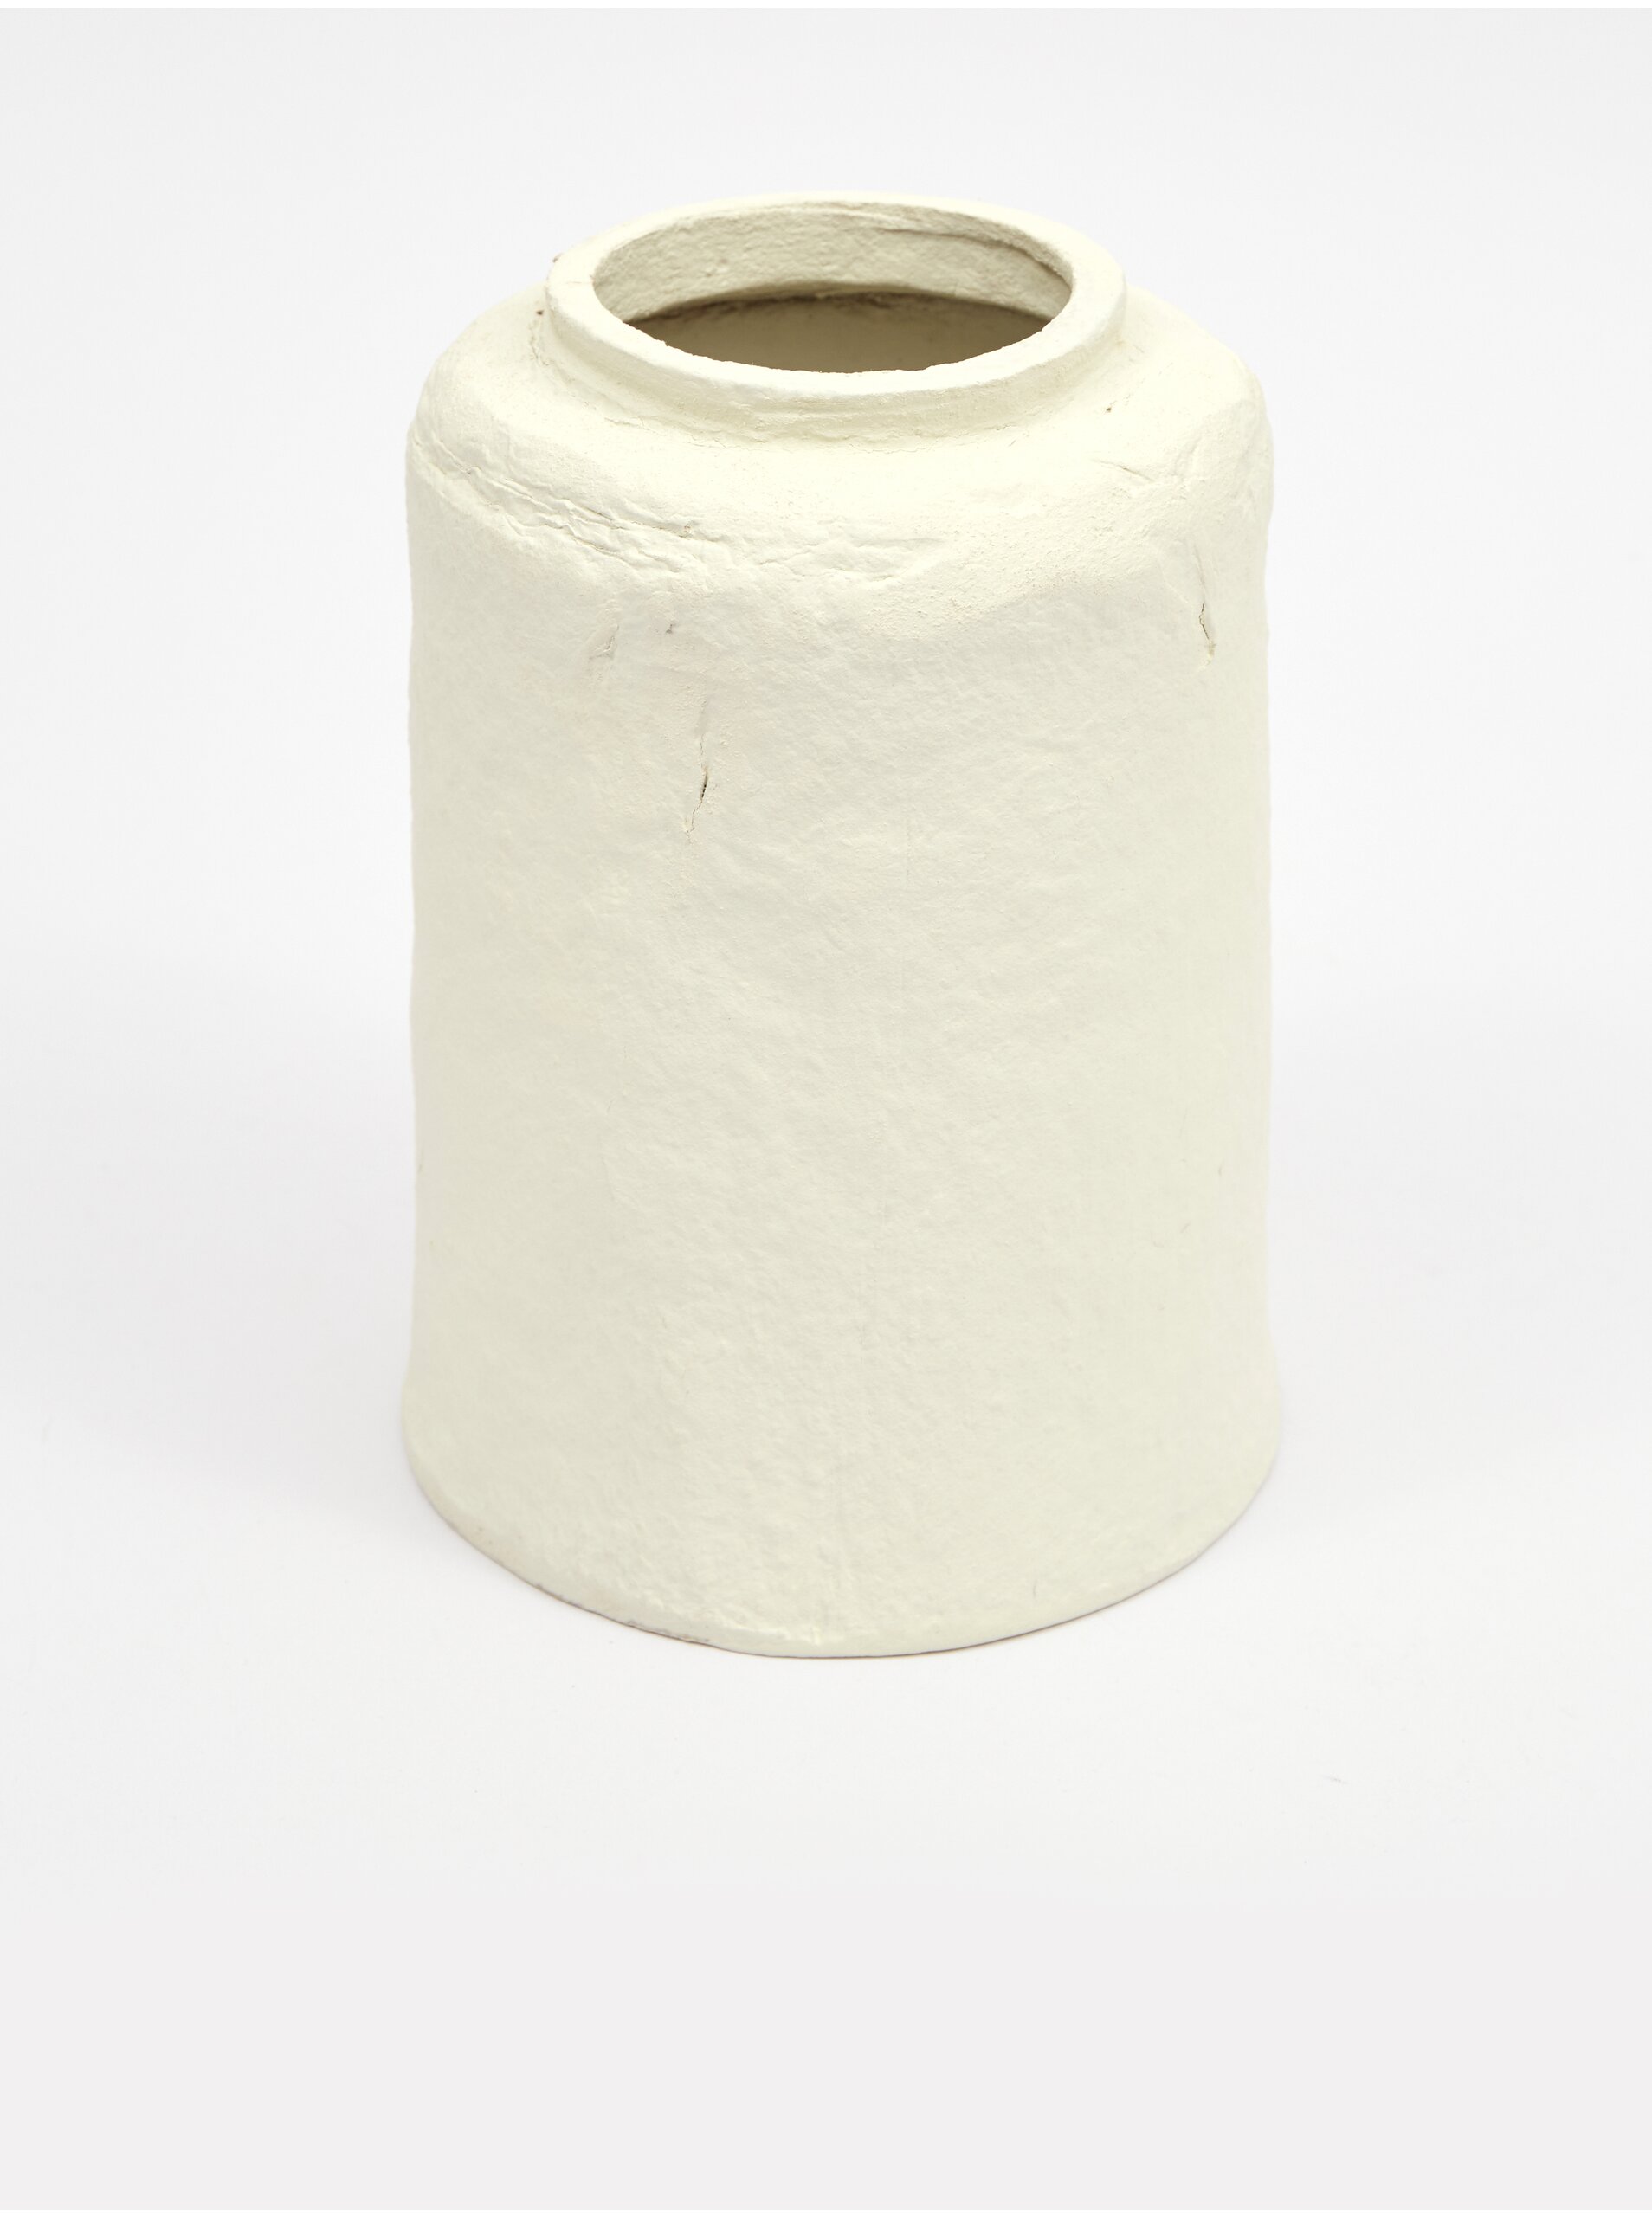 Lacno Krémová dekoračná papierová váza Kaemingk